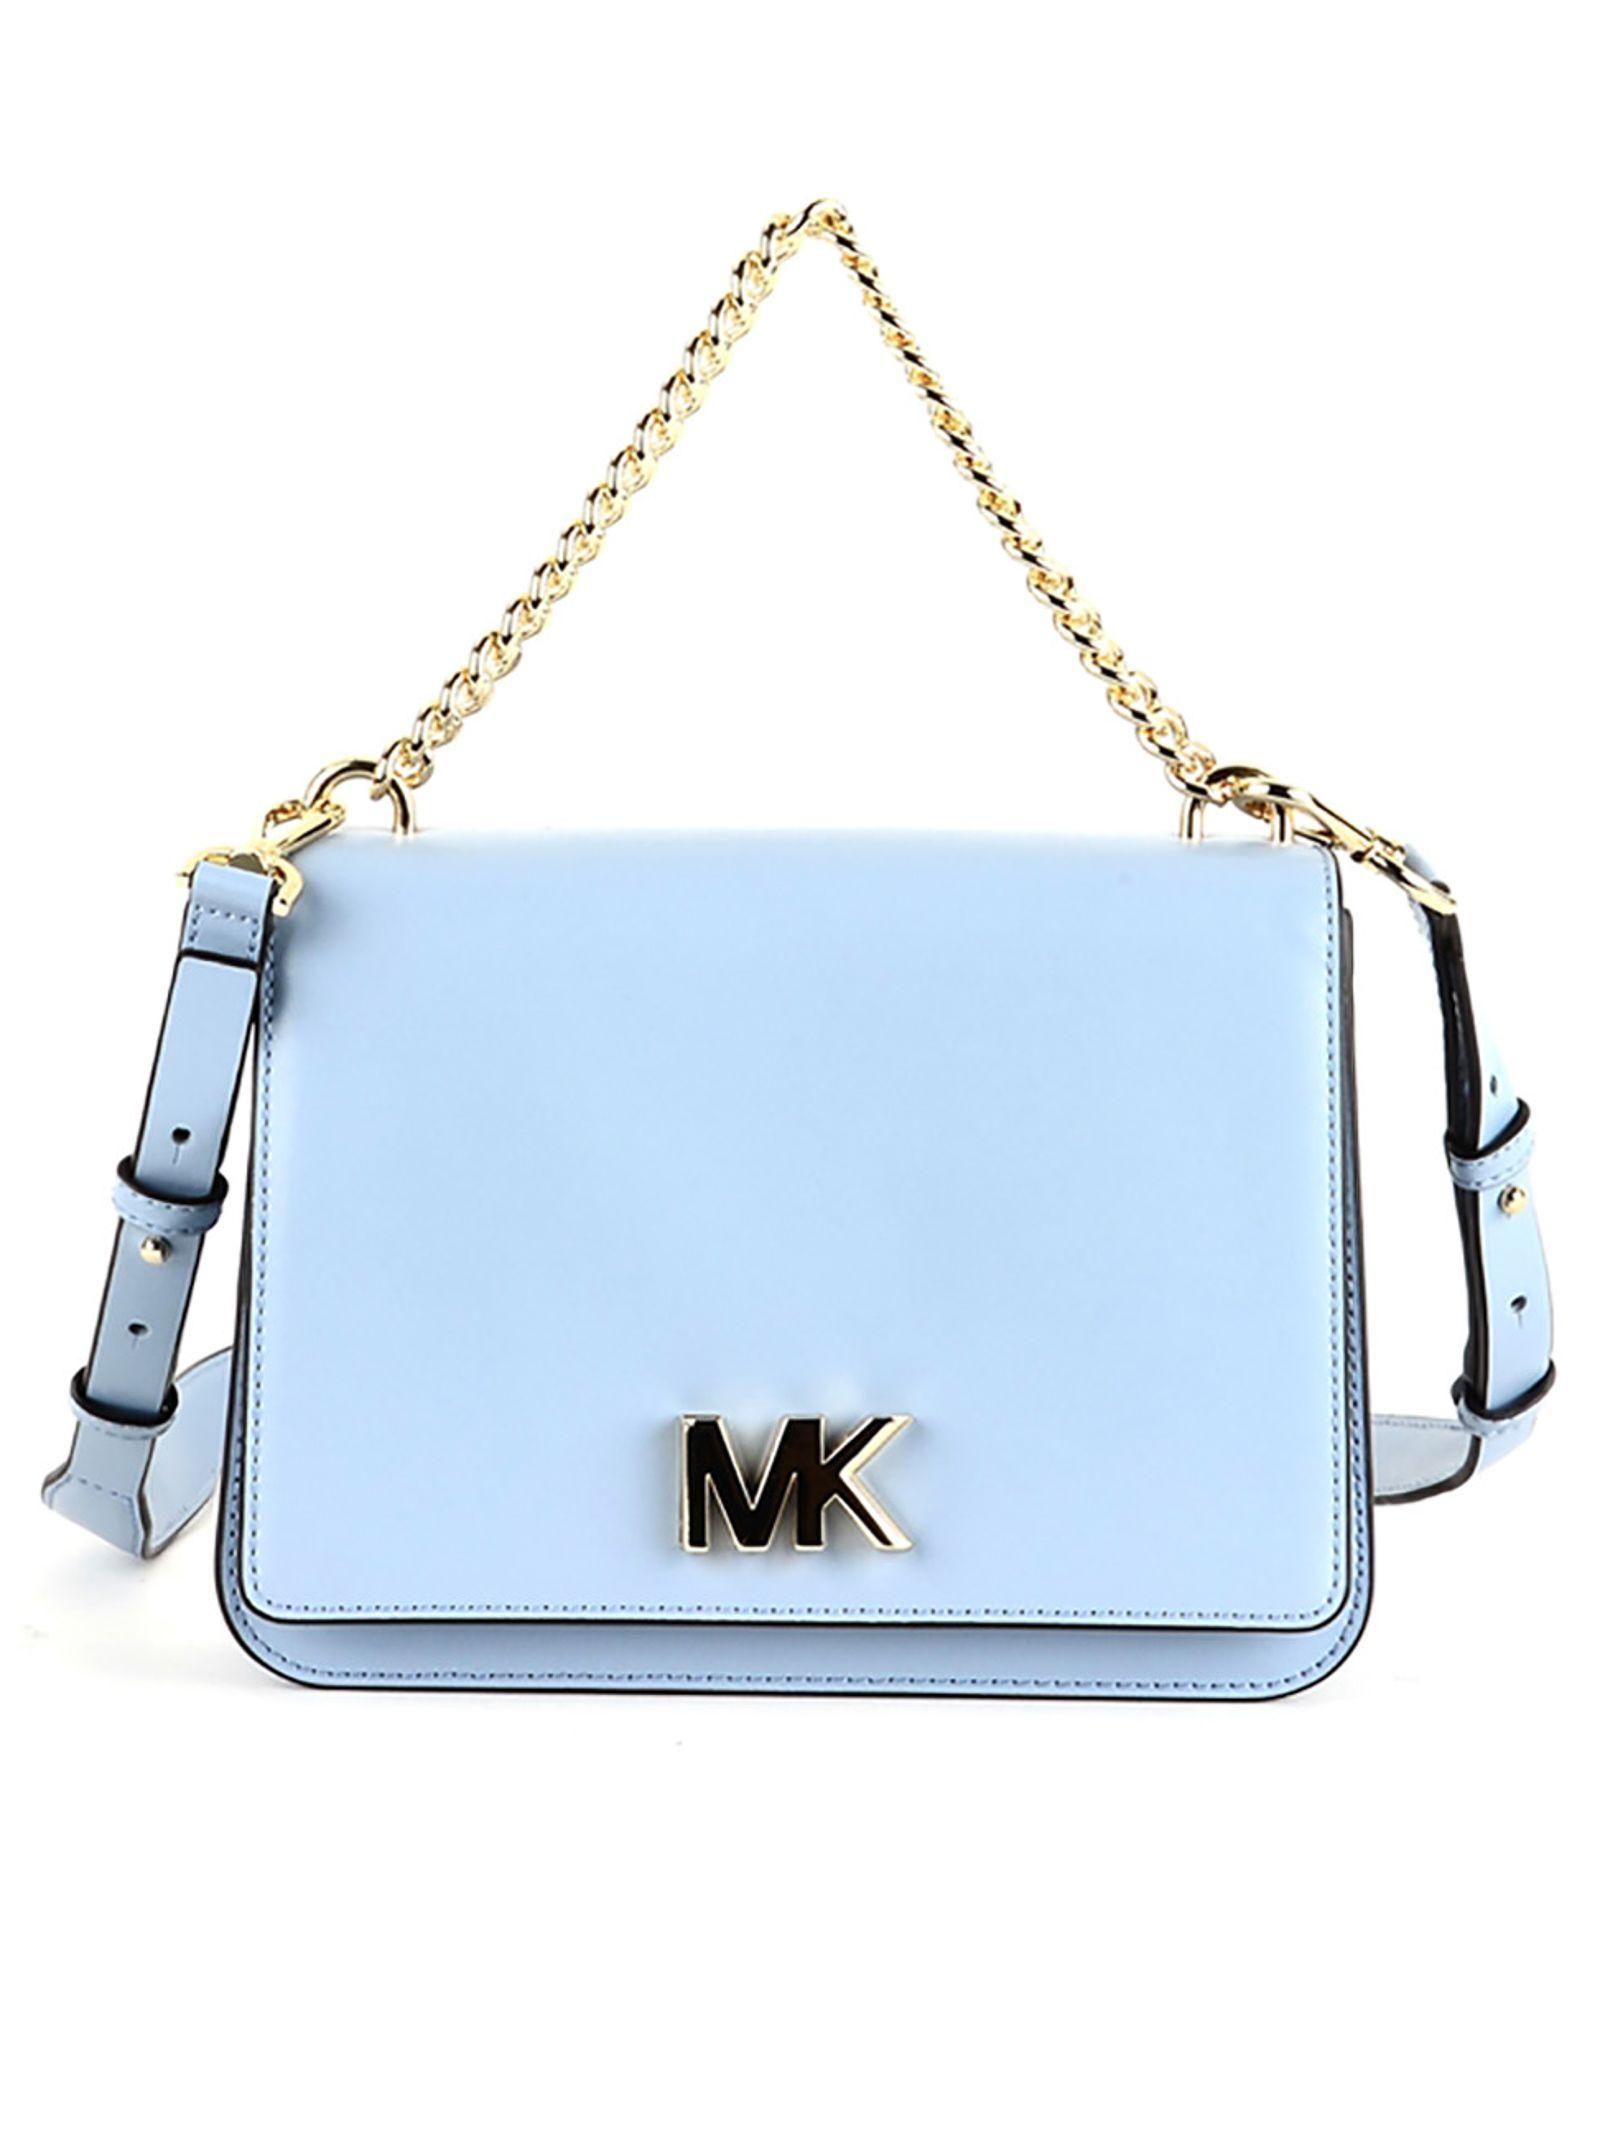 michael kors light blue handbag